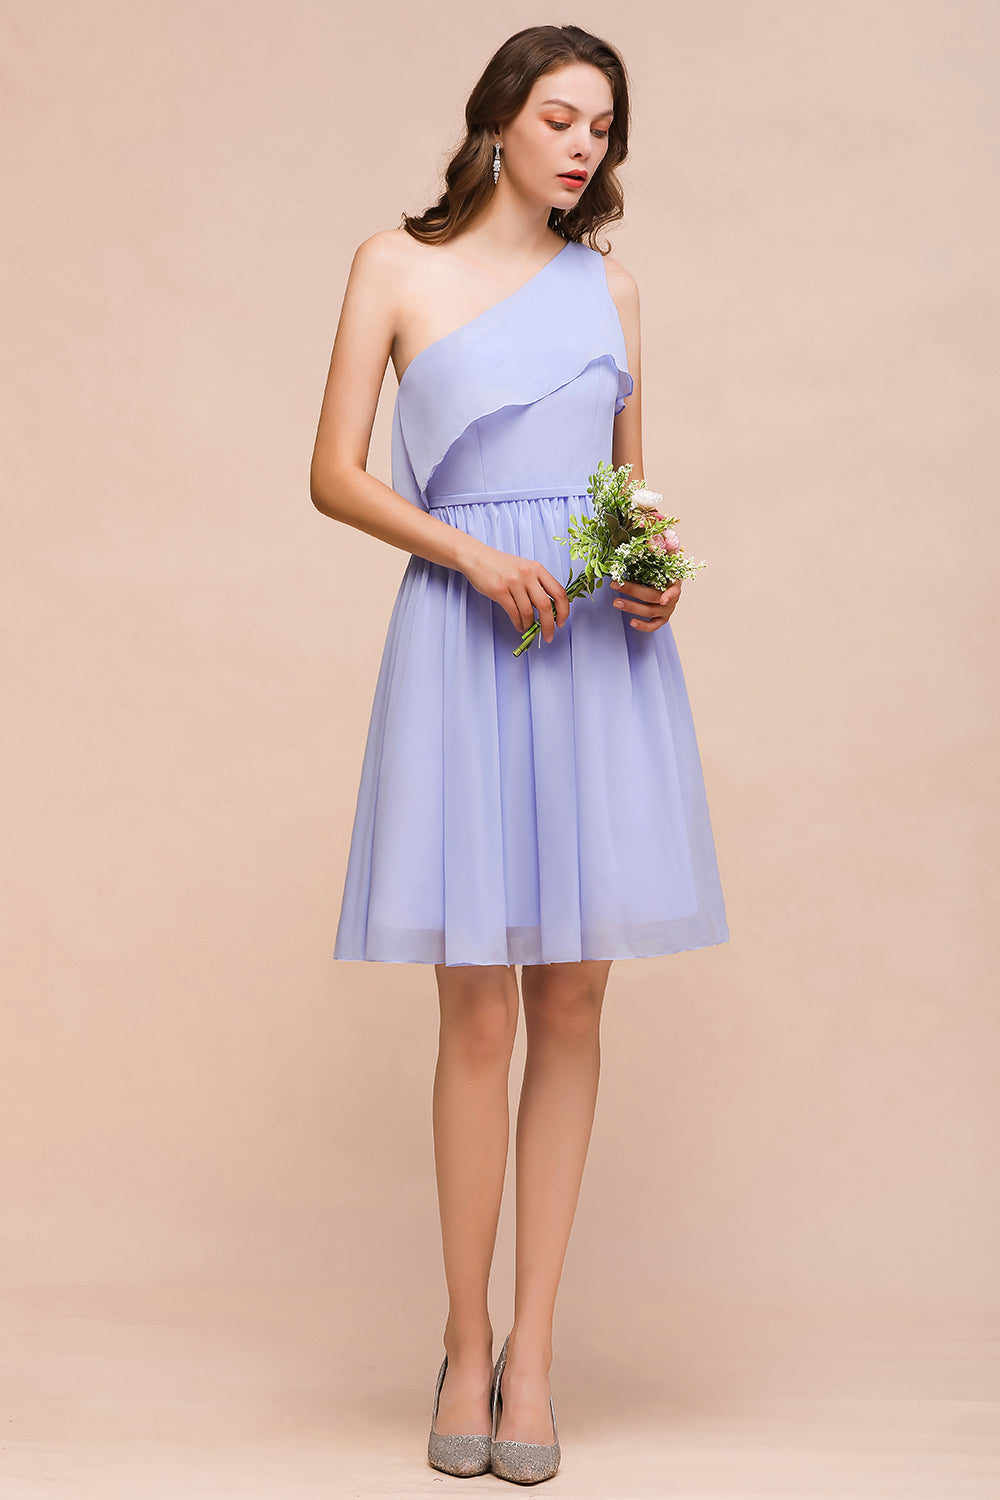 Suchen Sie Lavender Brautjungfernkleider Kurz online bei babyonlinedress.de. Chiffon Kleider Günstig für Brautjungfern maß geschneidert bekommen.